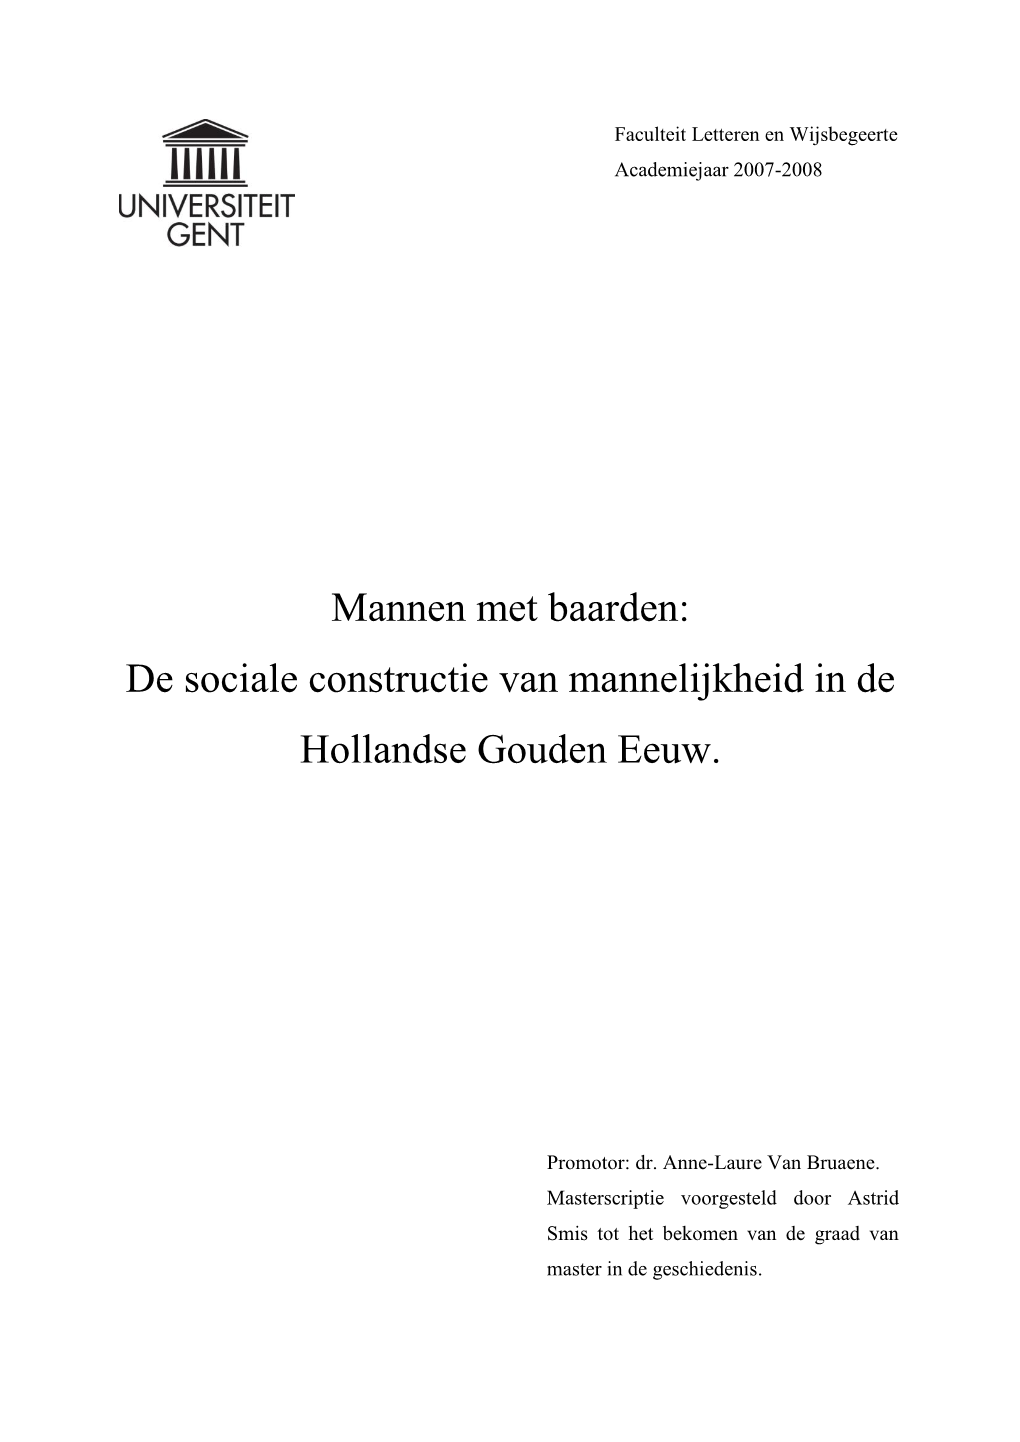 Mannen Met Baarden: De Sociale Constructie Van Mannelijkheid in De Hollandse Gouden Eeuw